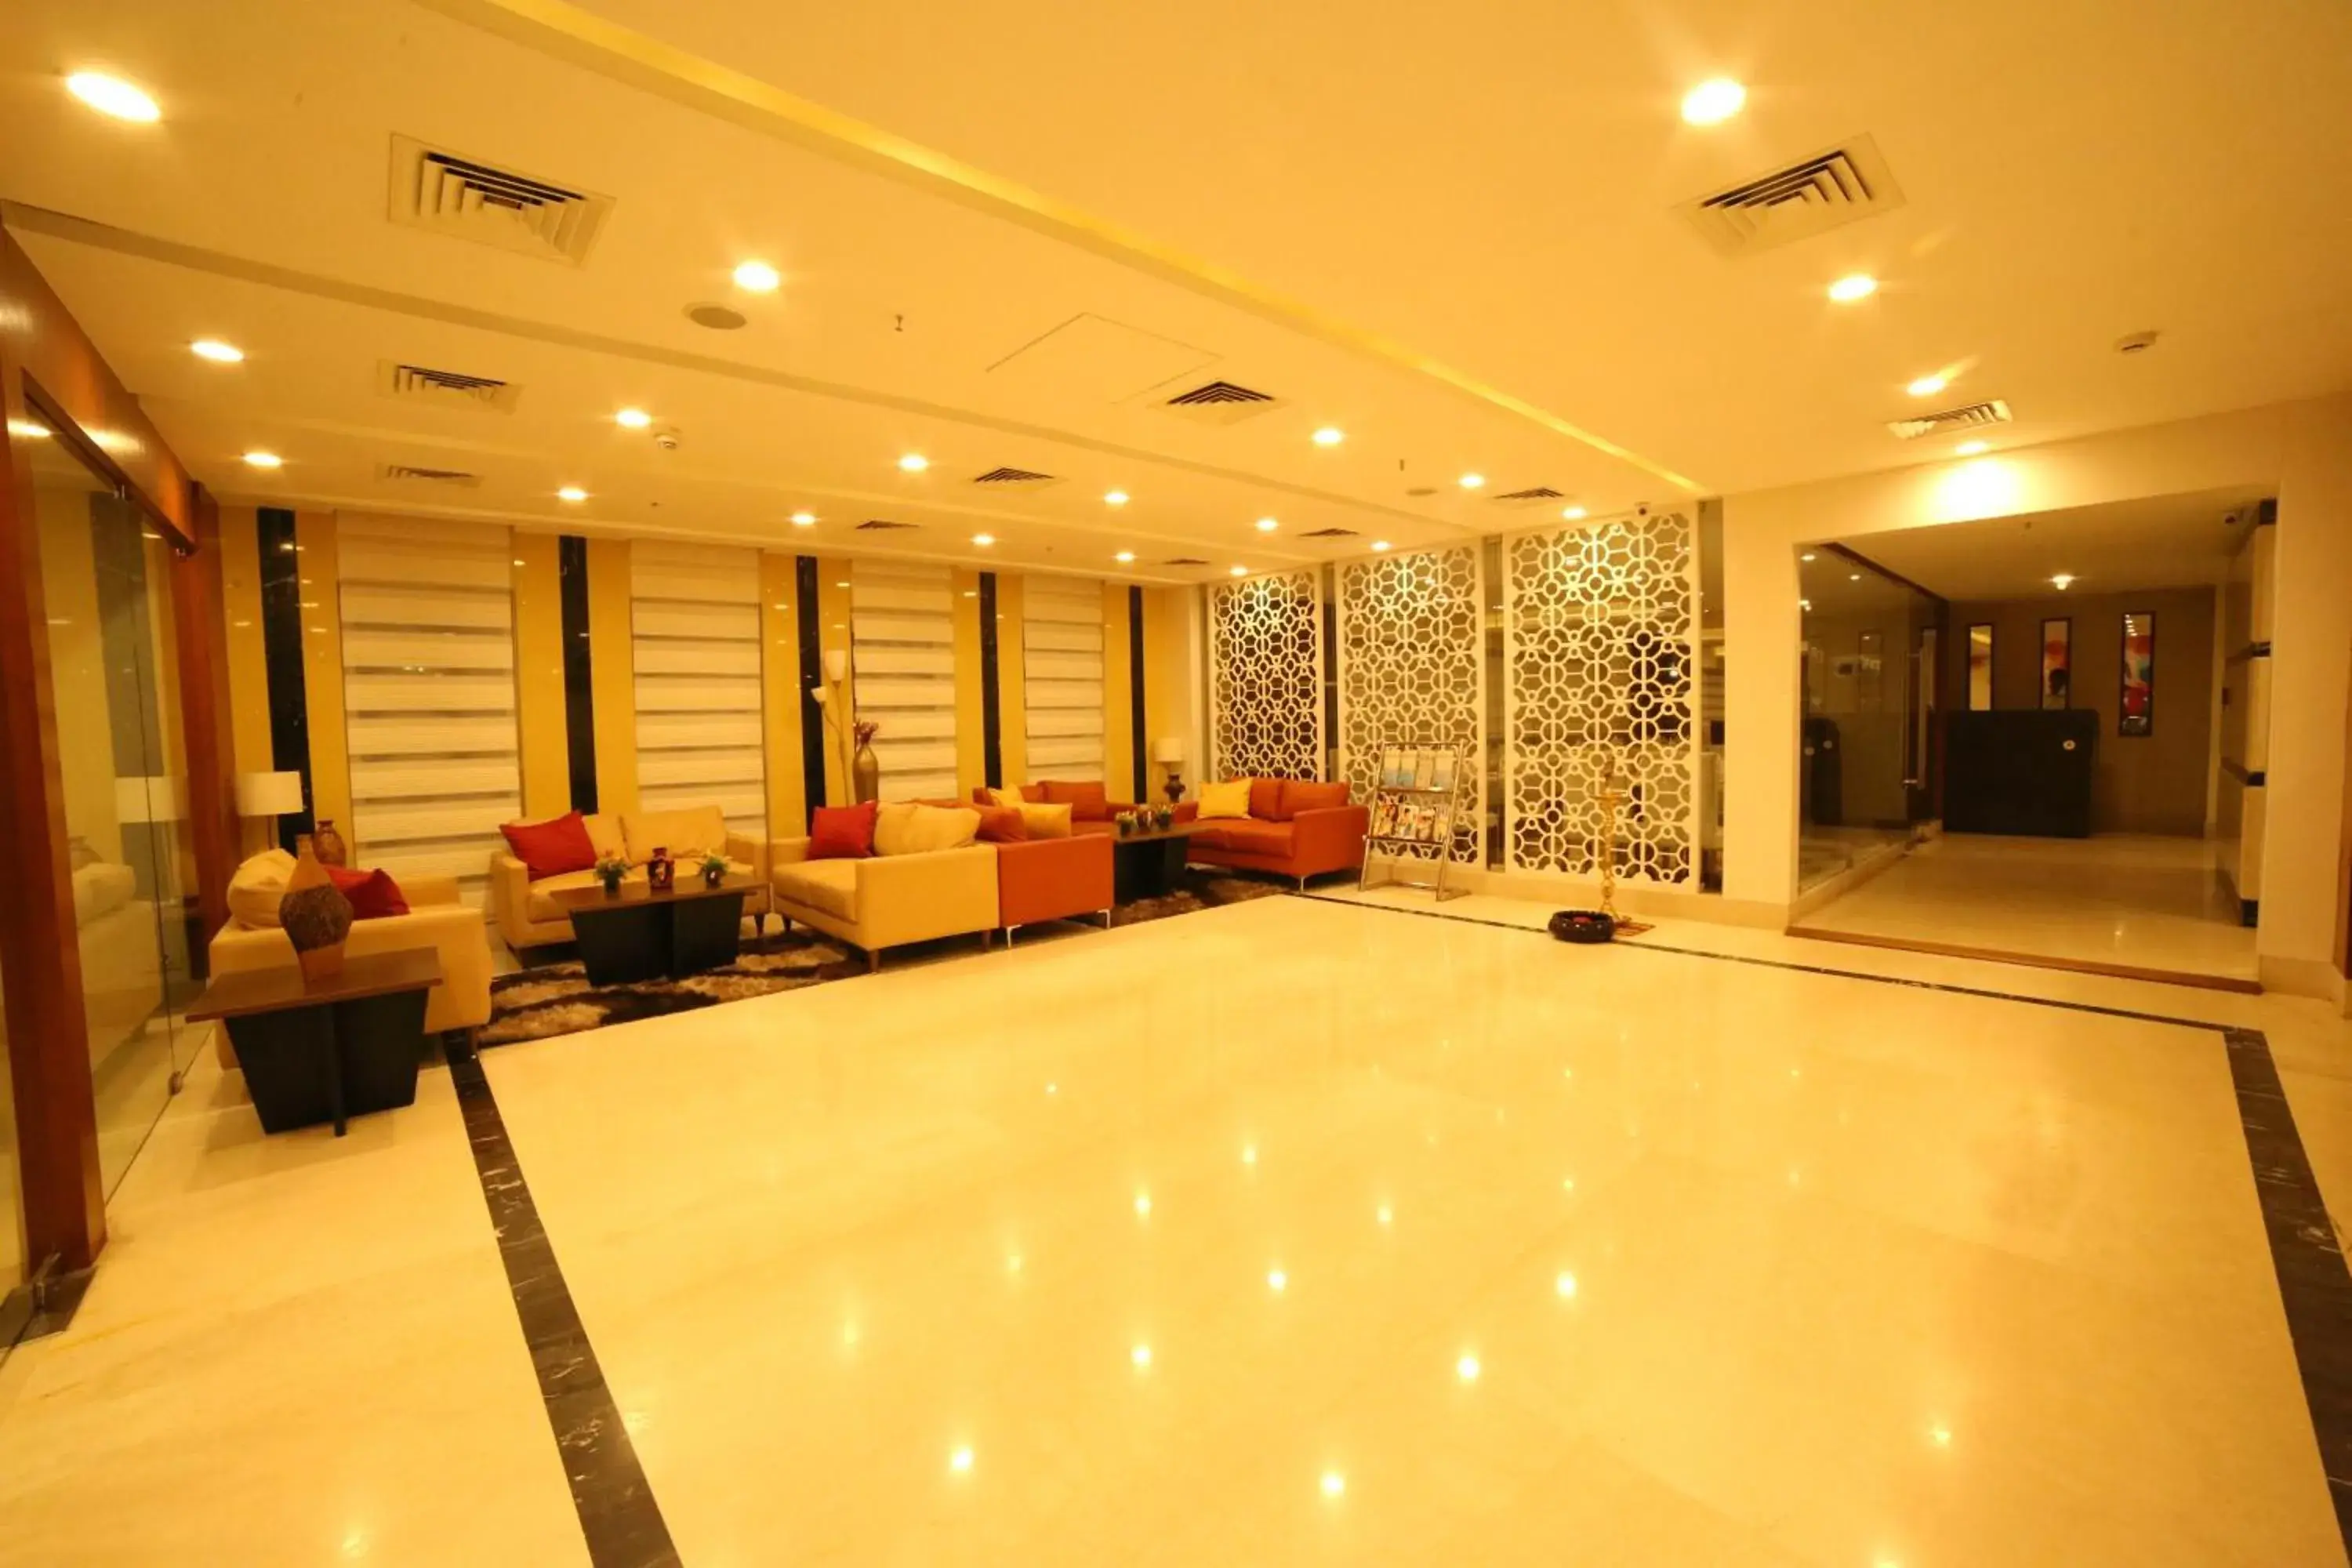 Lobby or reception, Lobby/Reception in Siesta Hitech Hotel